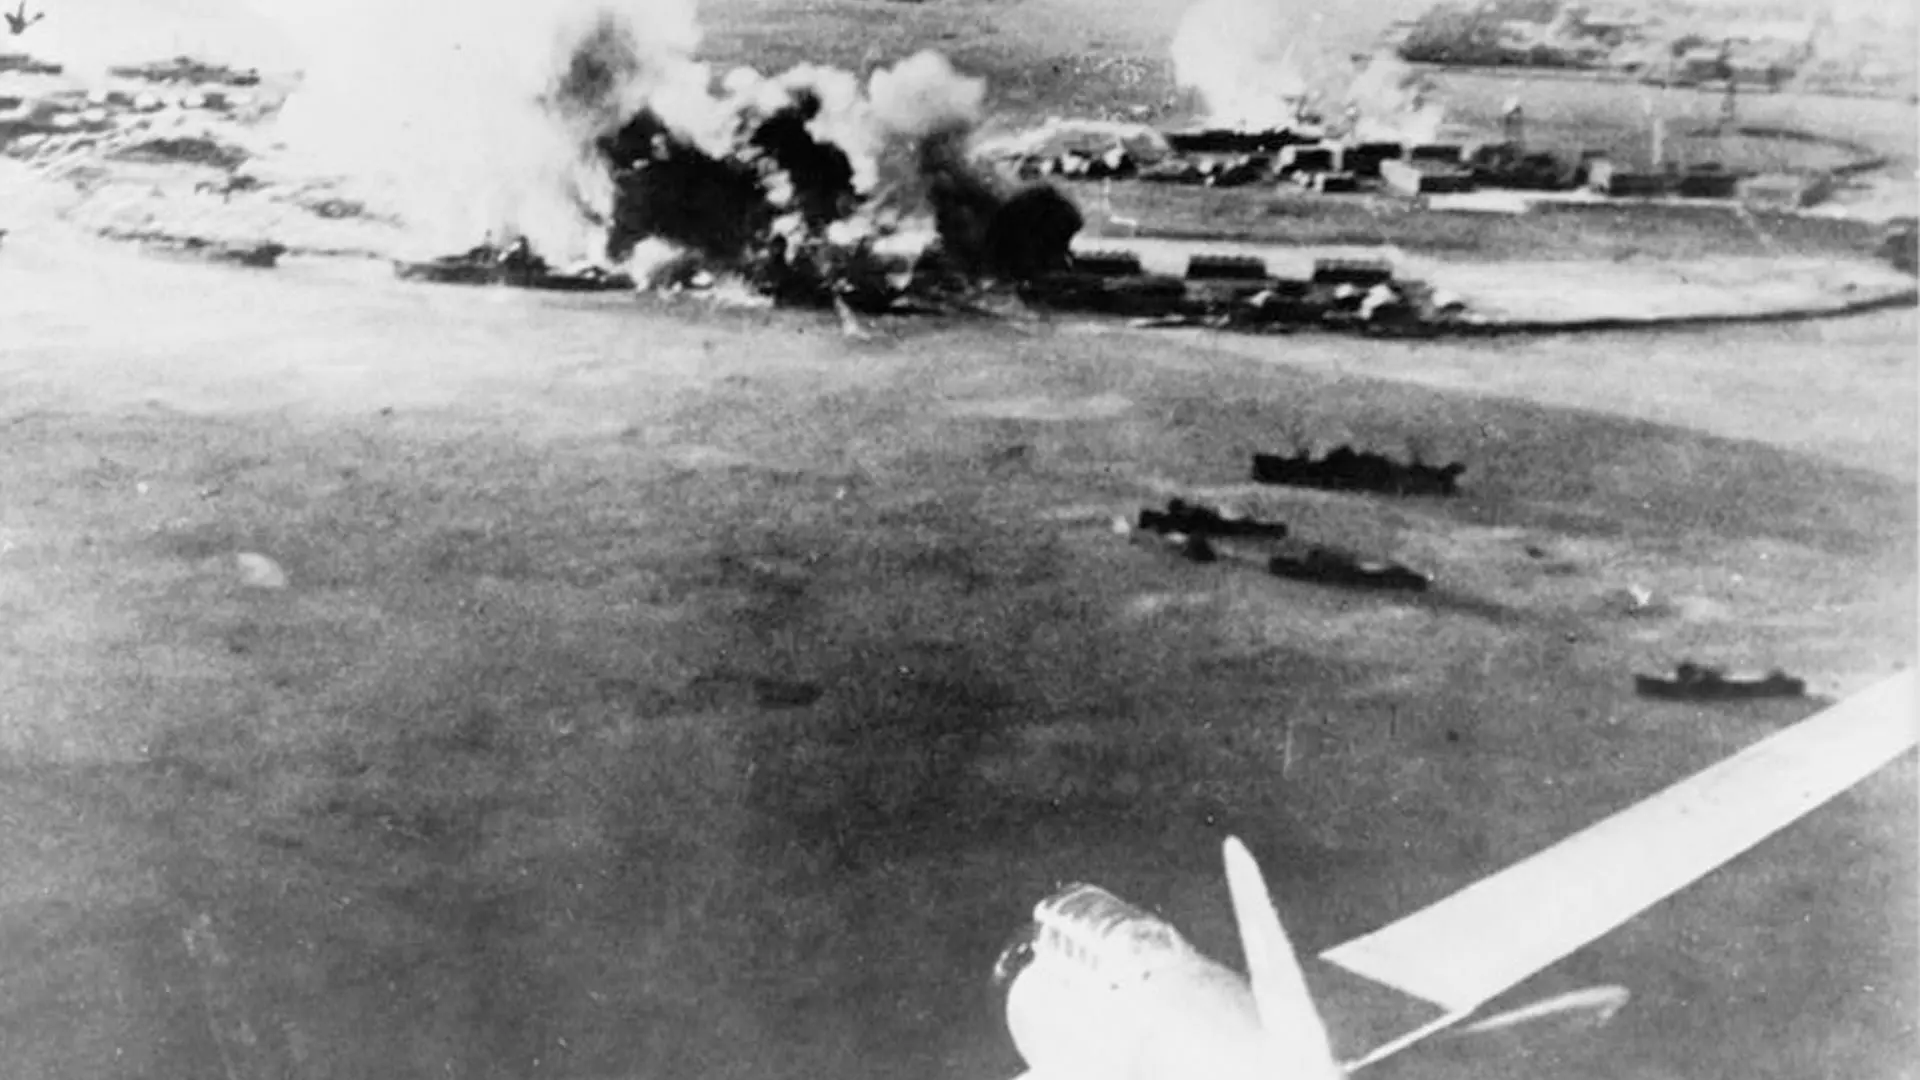 真珠湾攻撃が行われた昭和16年12月8日からの気象報道管制、全ての気象 